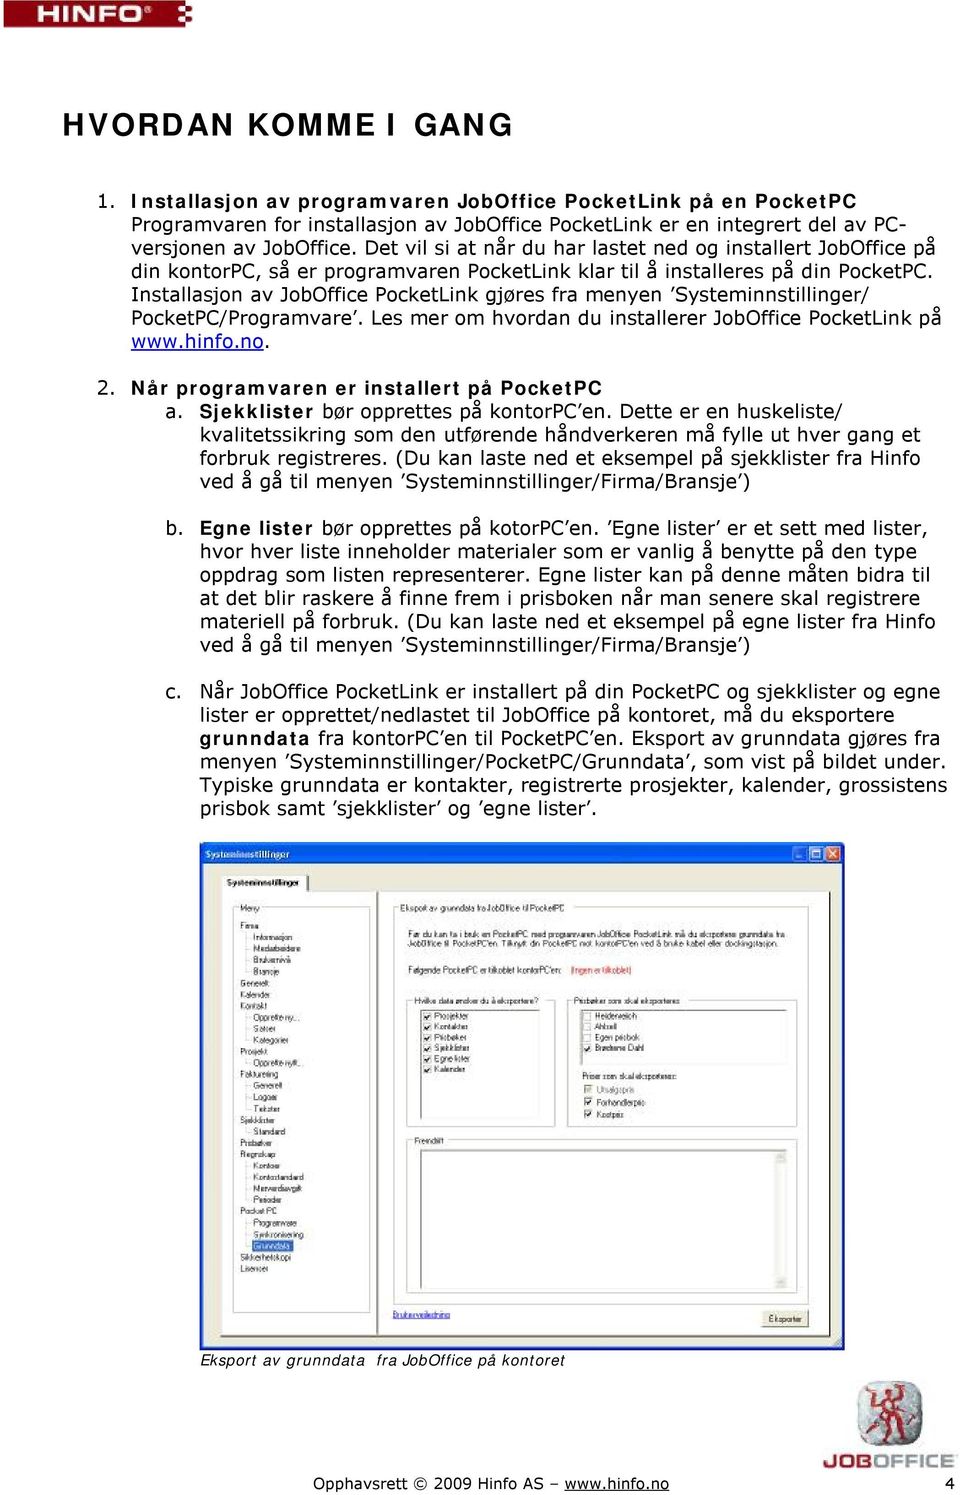 Installasjon av JobOffice PocketLink gjøres fra menyen Systeminnstillinger/ PocketPC/Programvare. Les mer om hvordan du installerer JobOffice PocketLink på www.hinfo.no. 2.